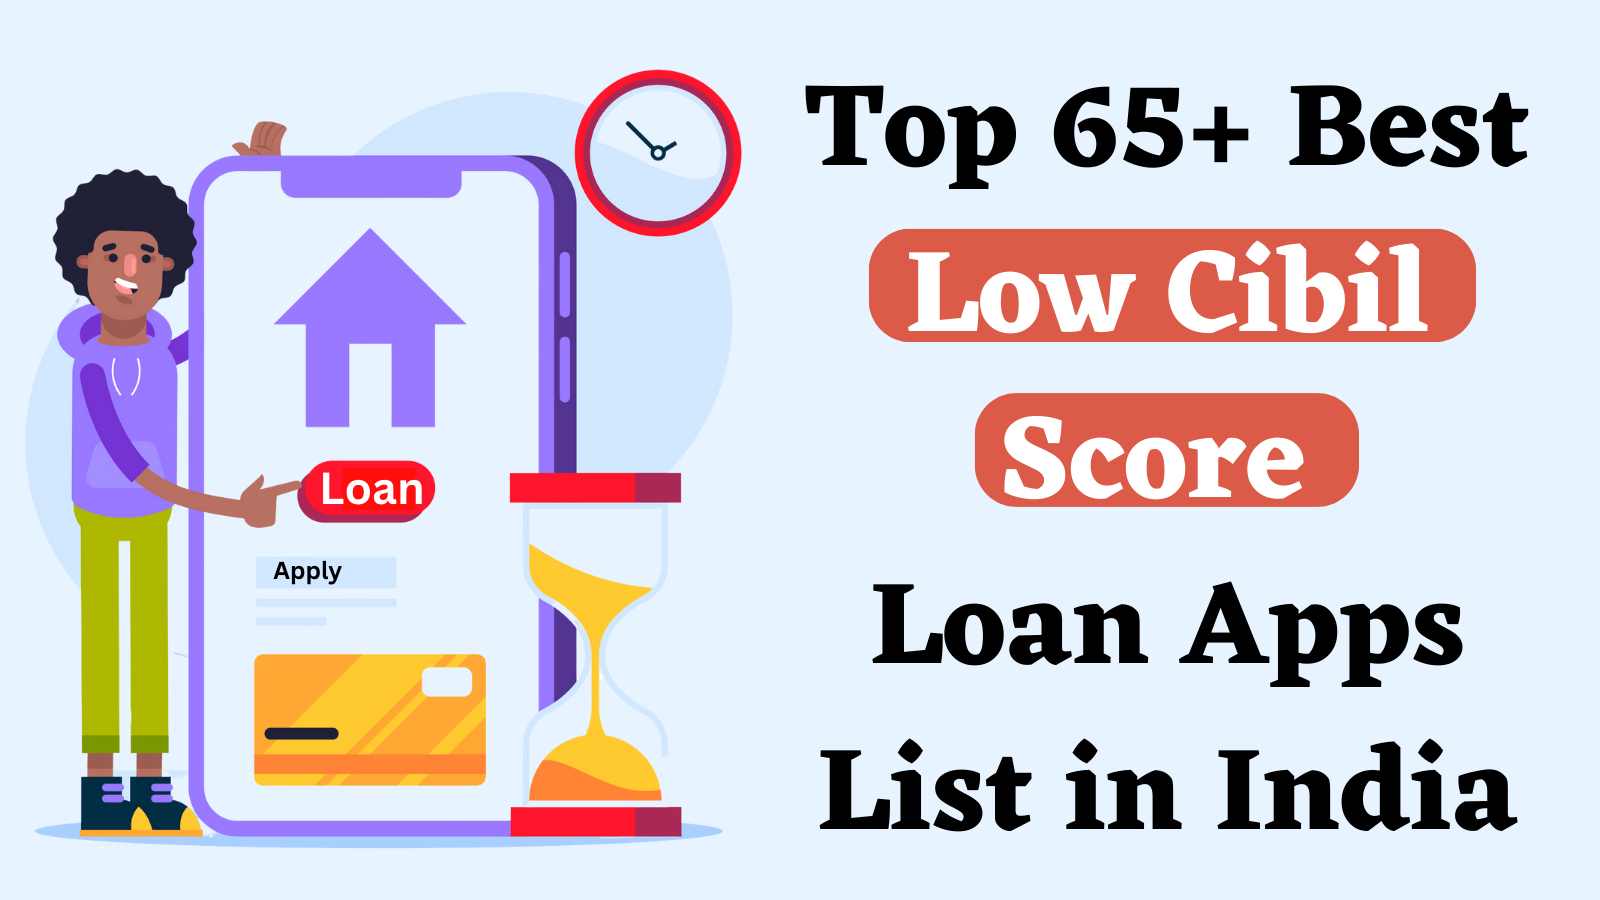 Top 65 Best Low Cibil Score Loan Apps Lists in India